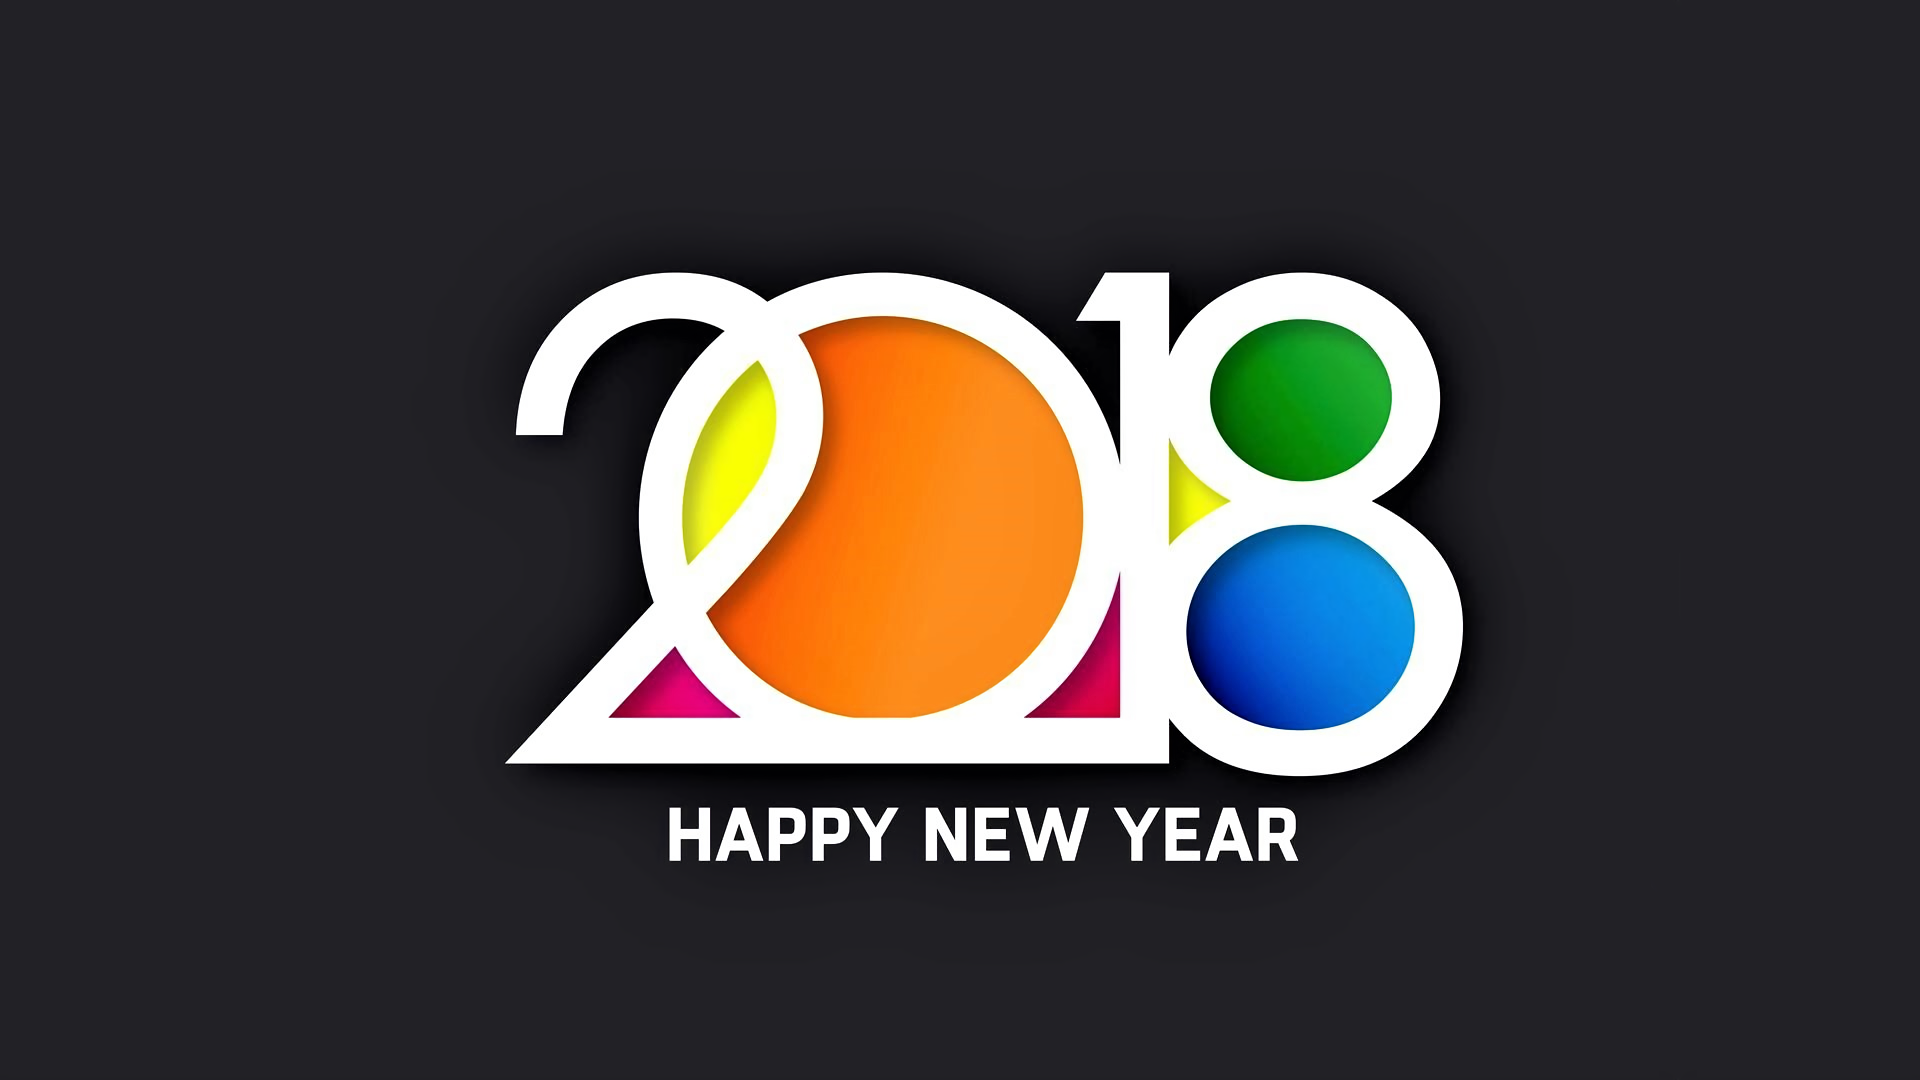 새해 복 많이 받으세요 2018 월페이퍼,본문,제도법,그래픽 디자인,폰트,원